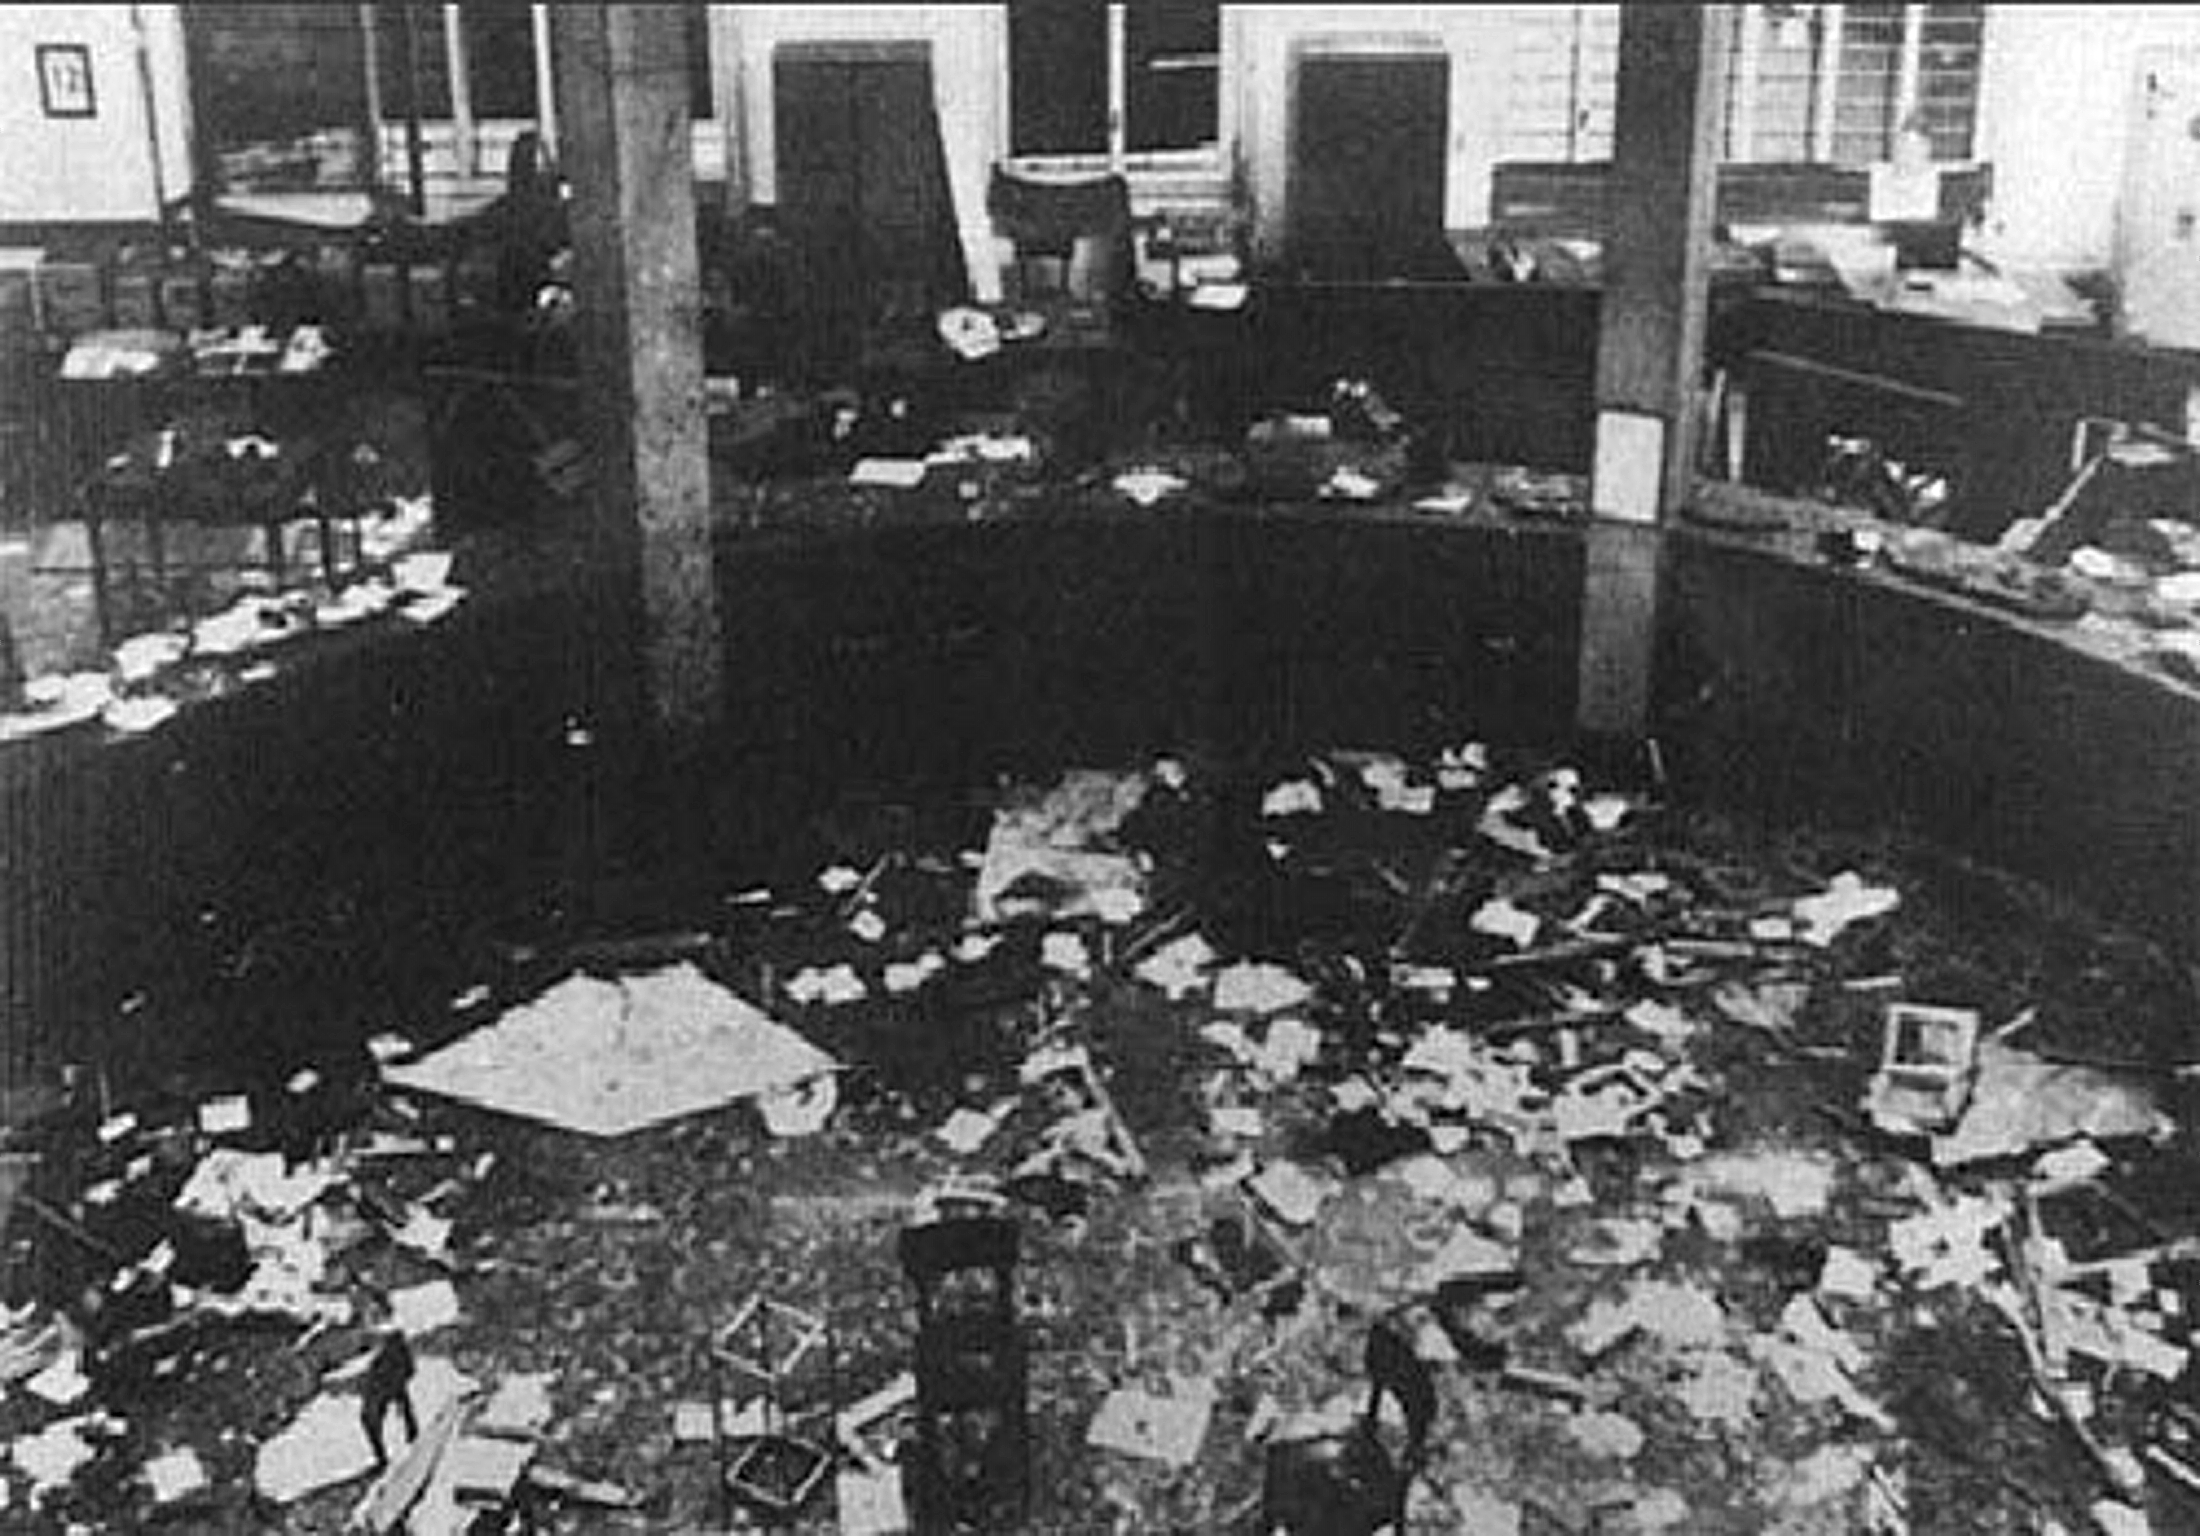 Immagine in bianco e nero dell'interno della Banca Nazionale dell'Agricoltura in seguito allo scoppio della bomba. Nell'immagine è visibile parte del pavimento e dei banchi disposti a semicerchio cosparsi di macerie, vetri rotti e carte.